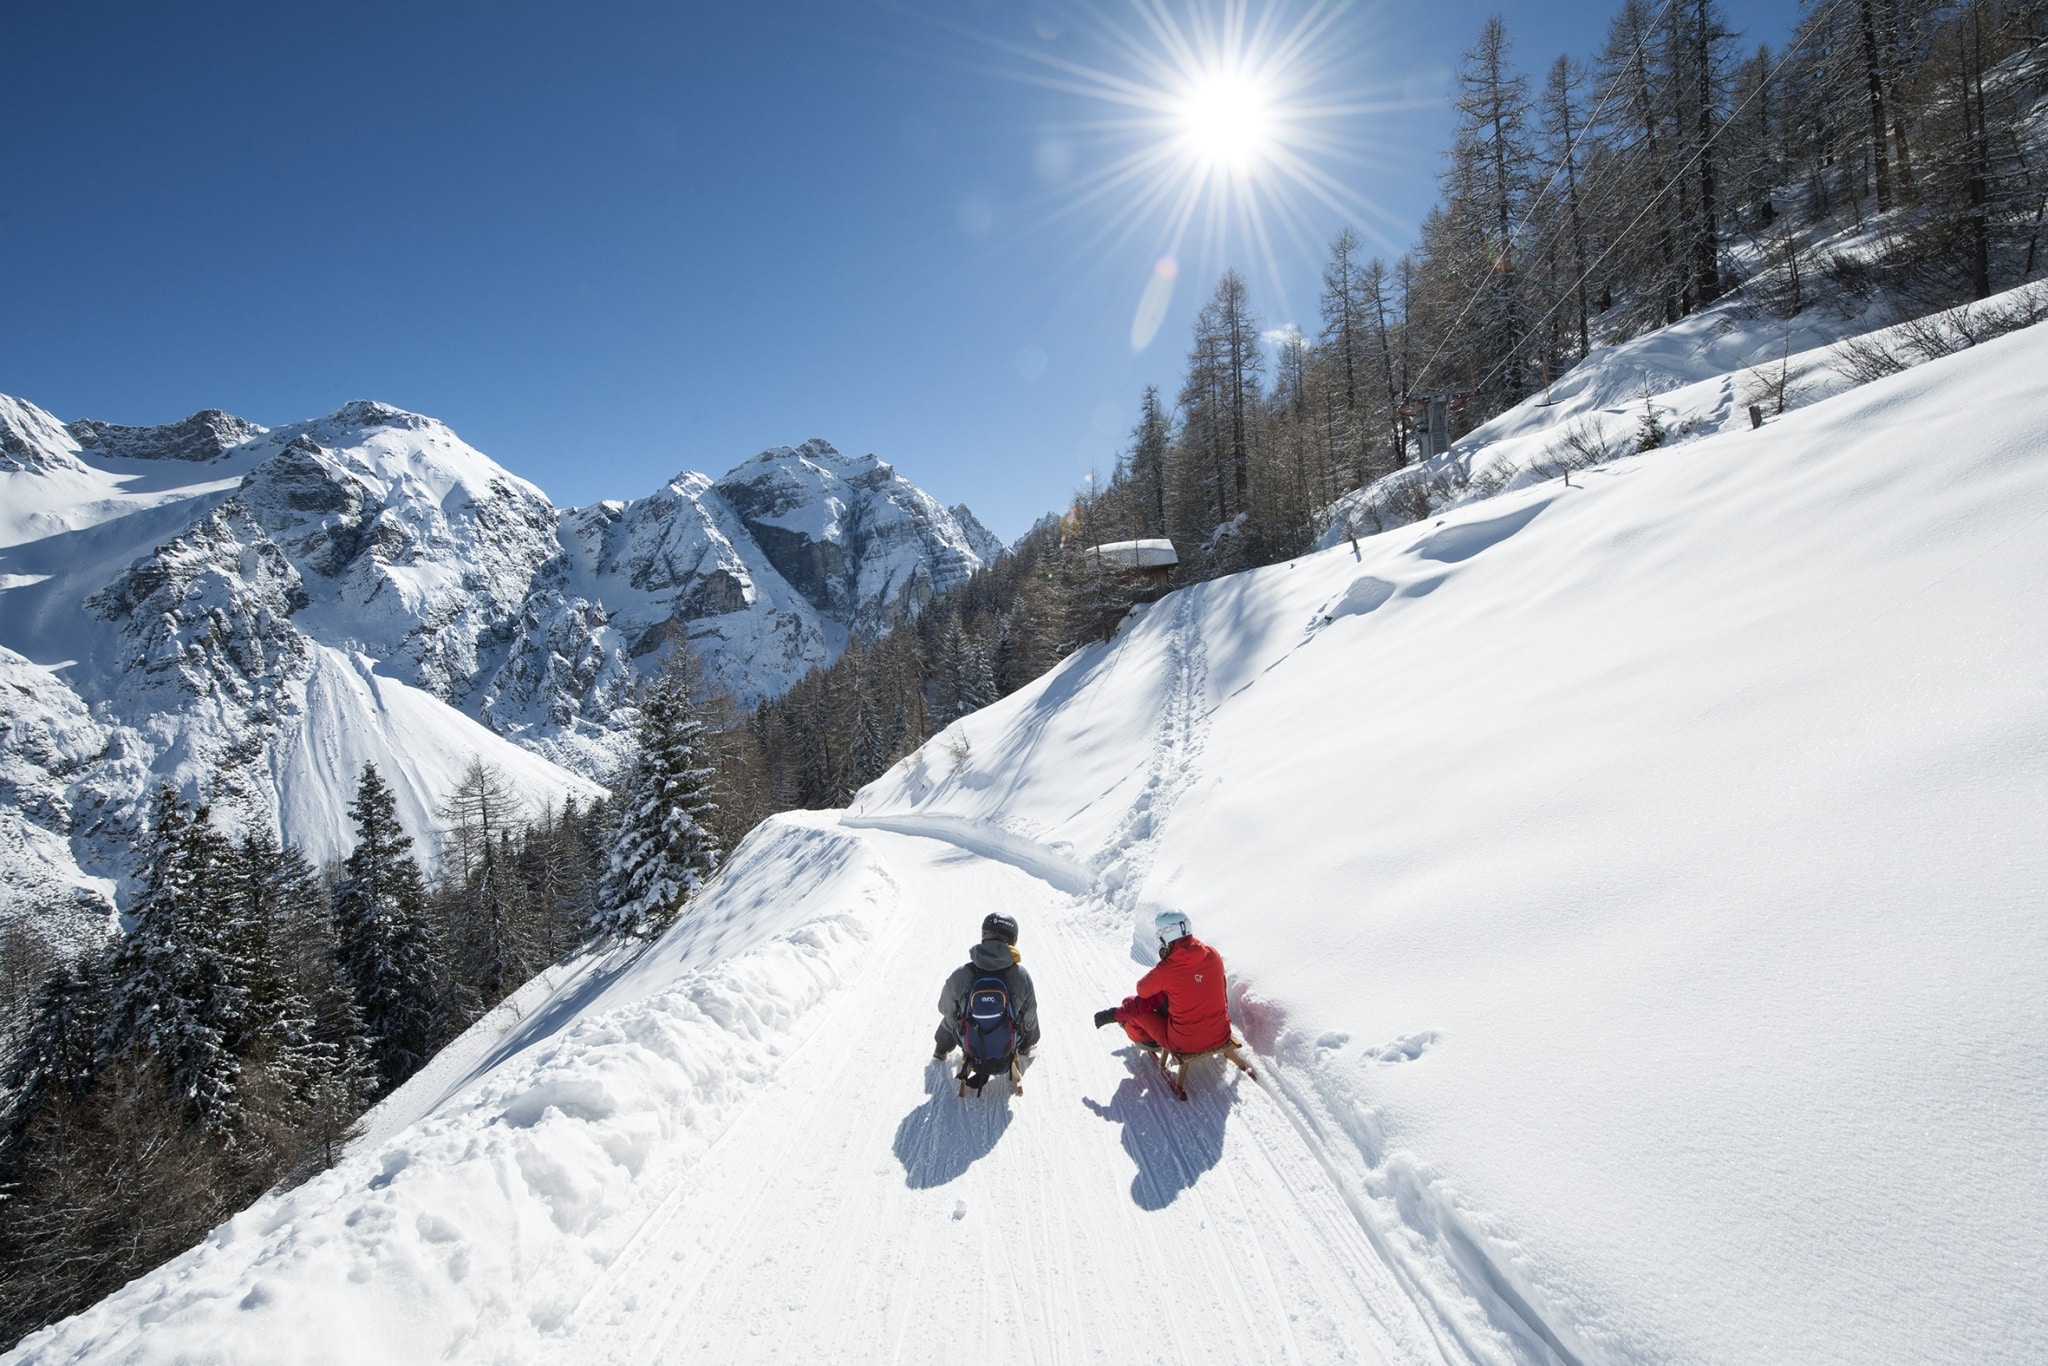 Nachhaltig entspannt erlebnisreich Der Winter im Stubaital - 4 - Copyright © TVB Stubai Tirol Andre Schönherr